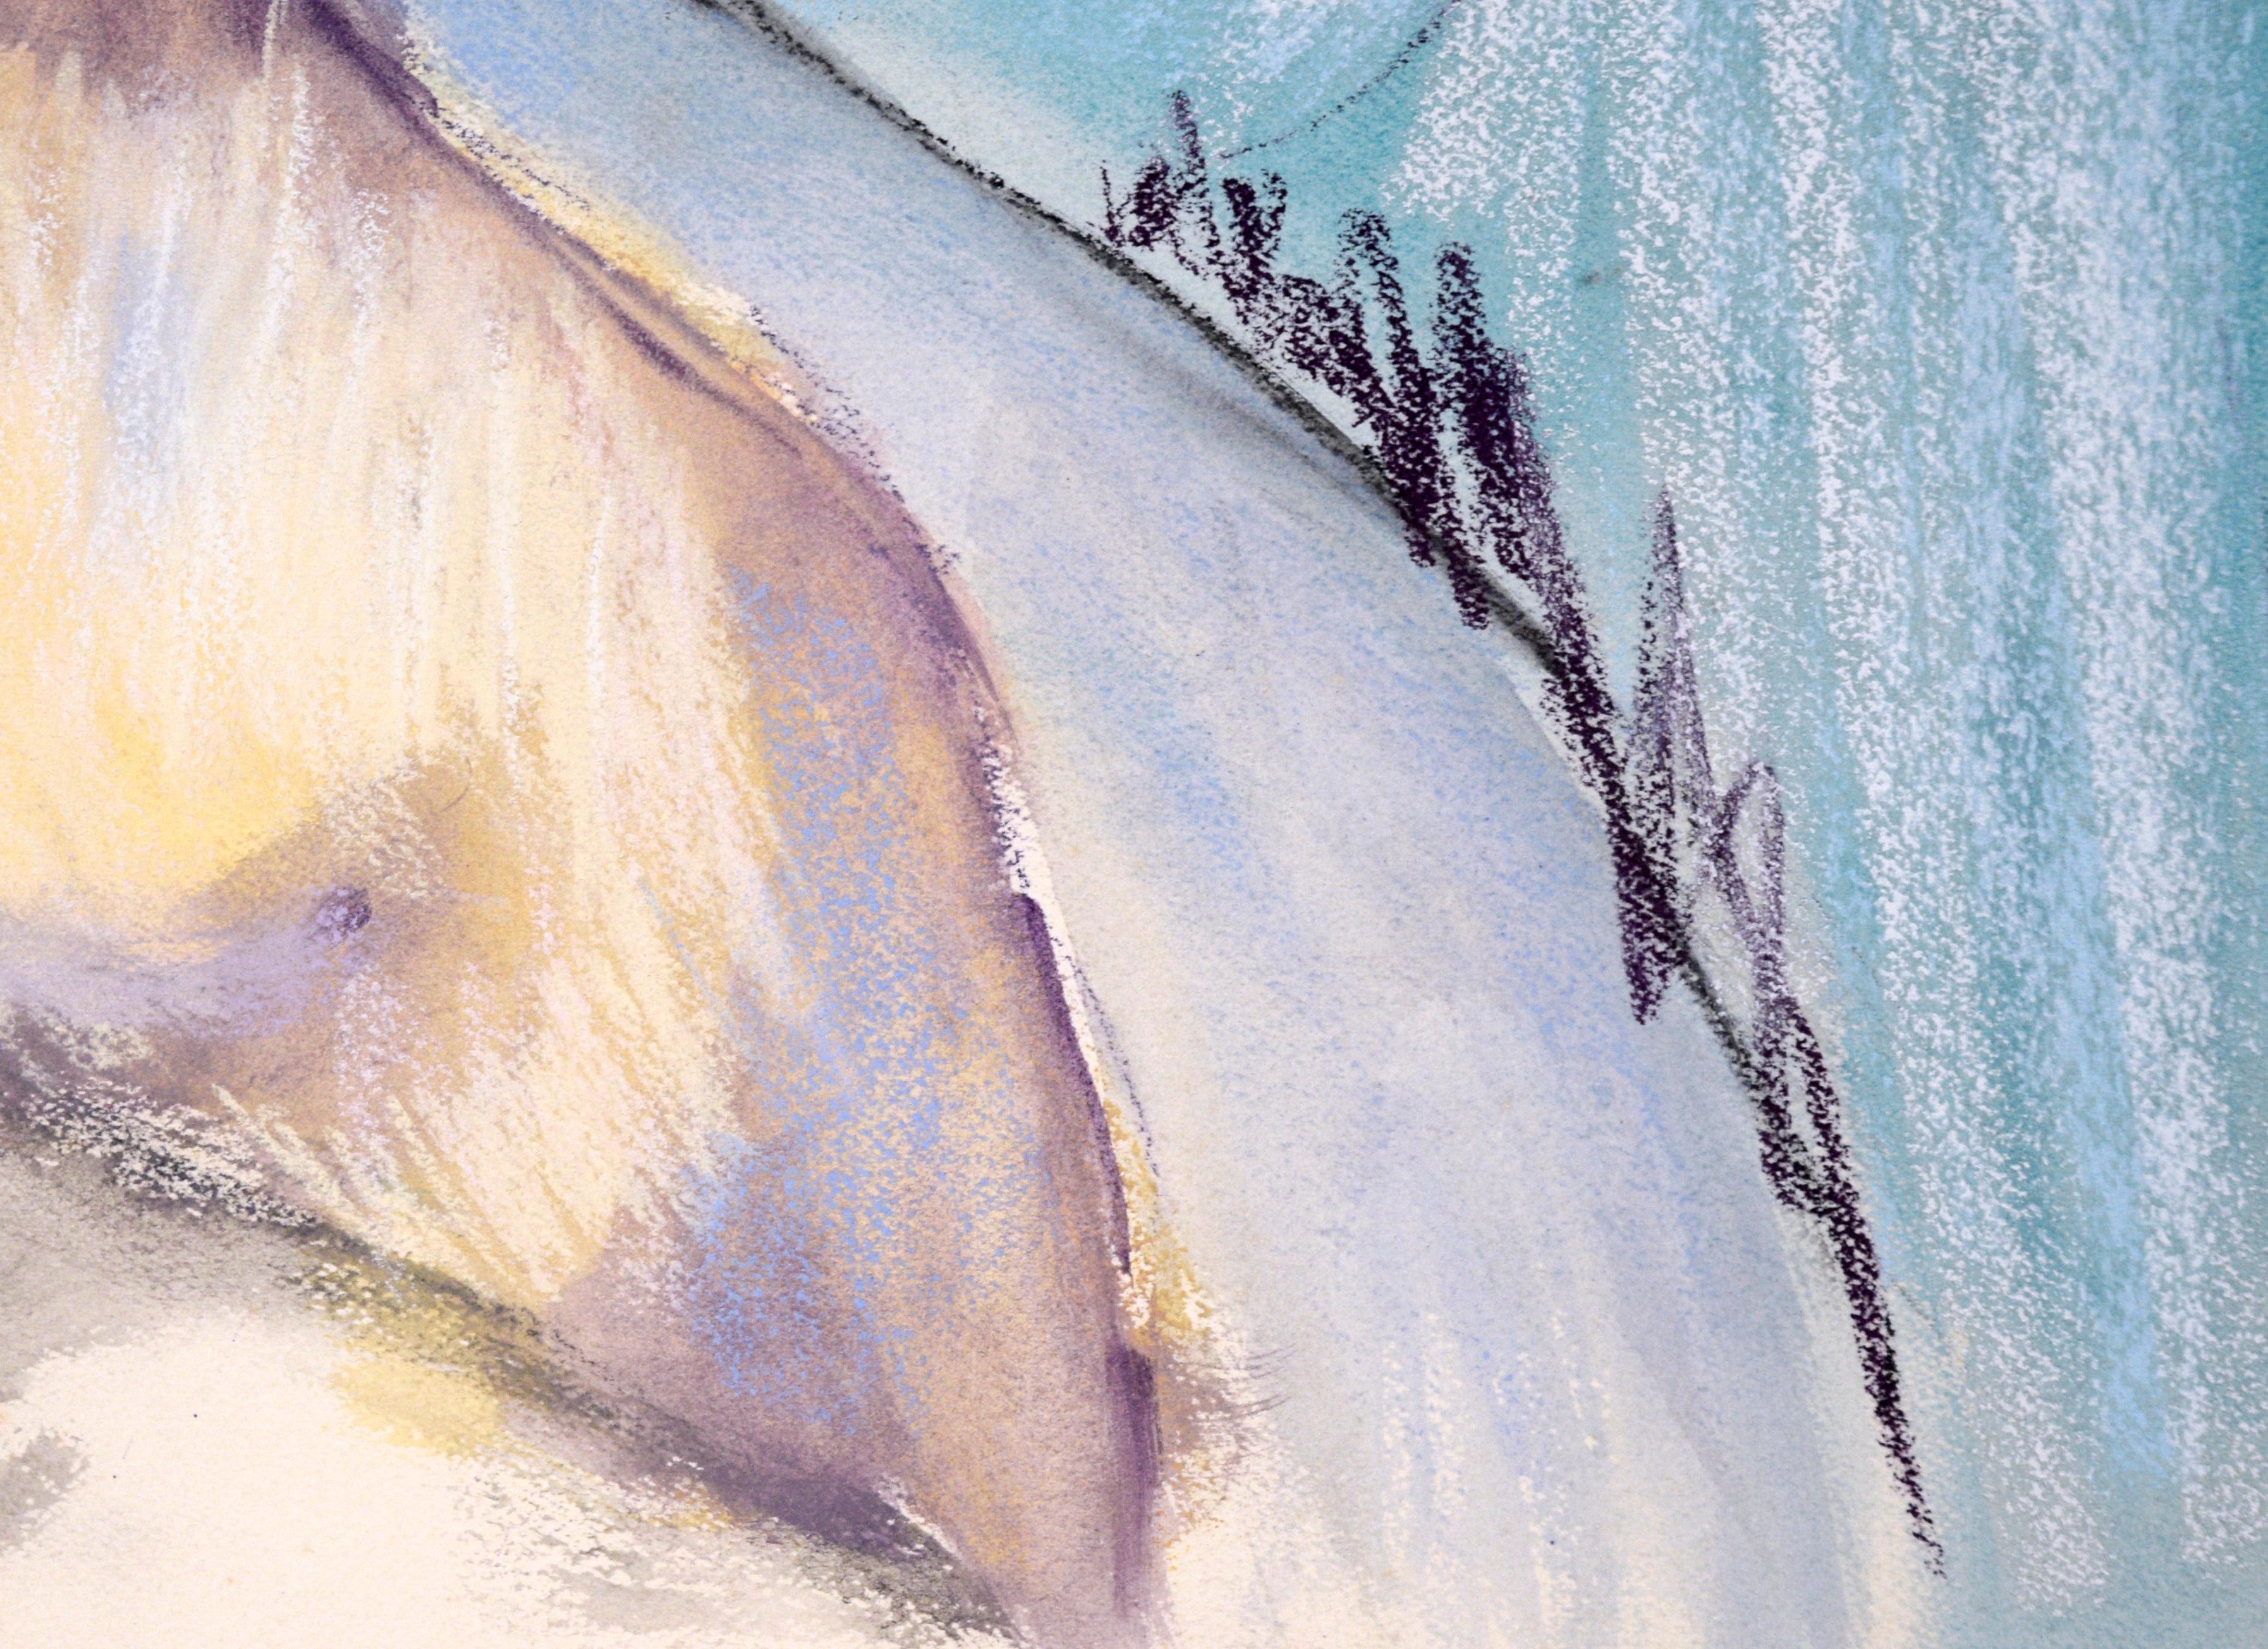 Nu figuratif féminin debout à l'aquarelle et au pastel sur papier

Une femme est représentée debout, vraisemblablement enceinte, dans la nudité, la main posée sur la nuque. L'artiste utilise l'aquarelle dans des tons froids comme base, avec des